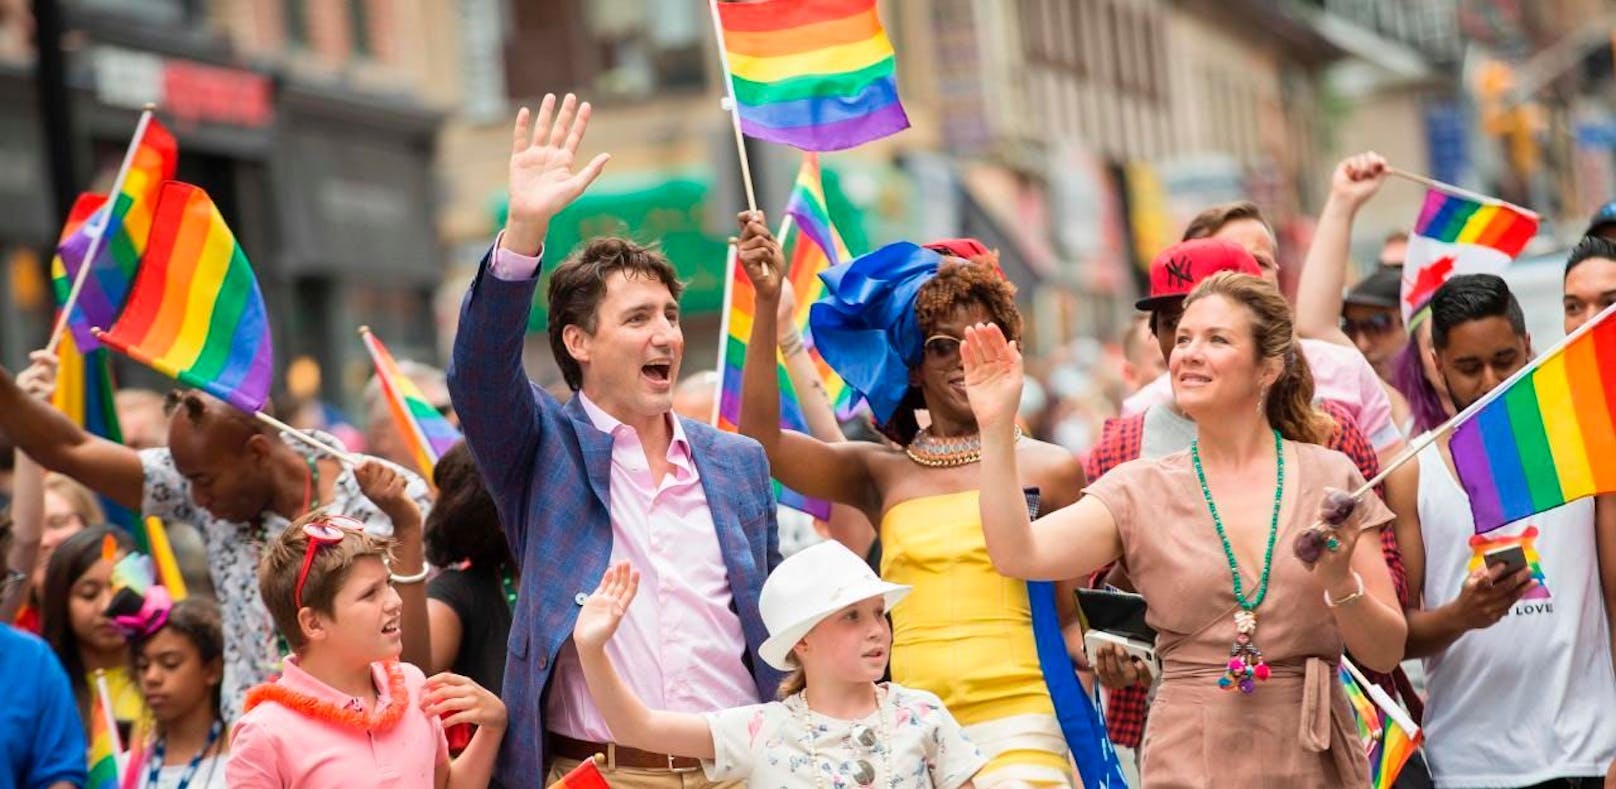 Der kanadische Premier Justin Trudeau setzt sich sehr stark für die LGBT-Community ein.